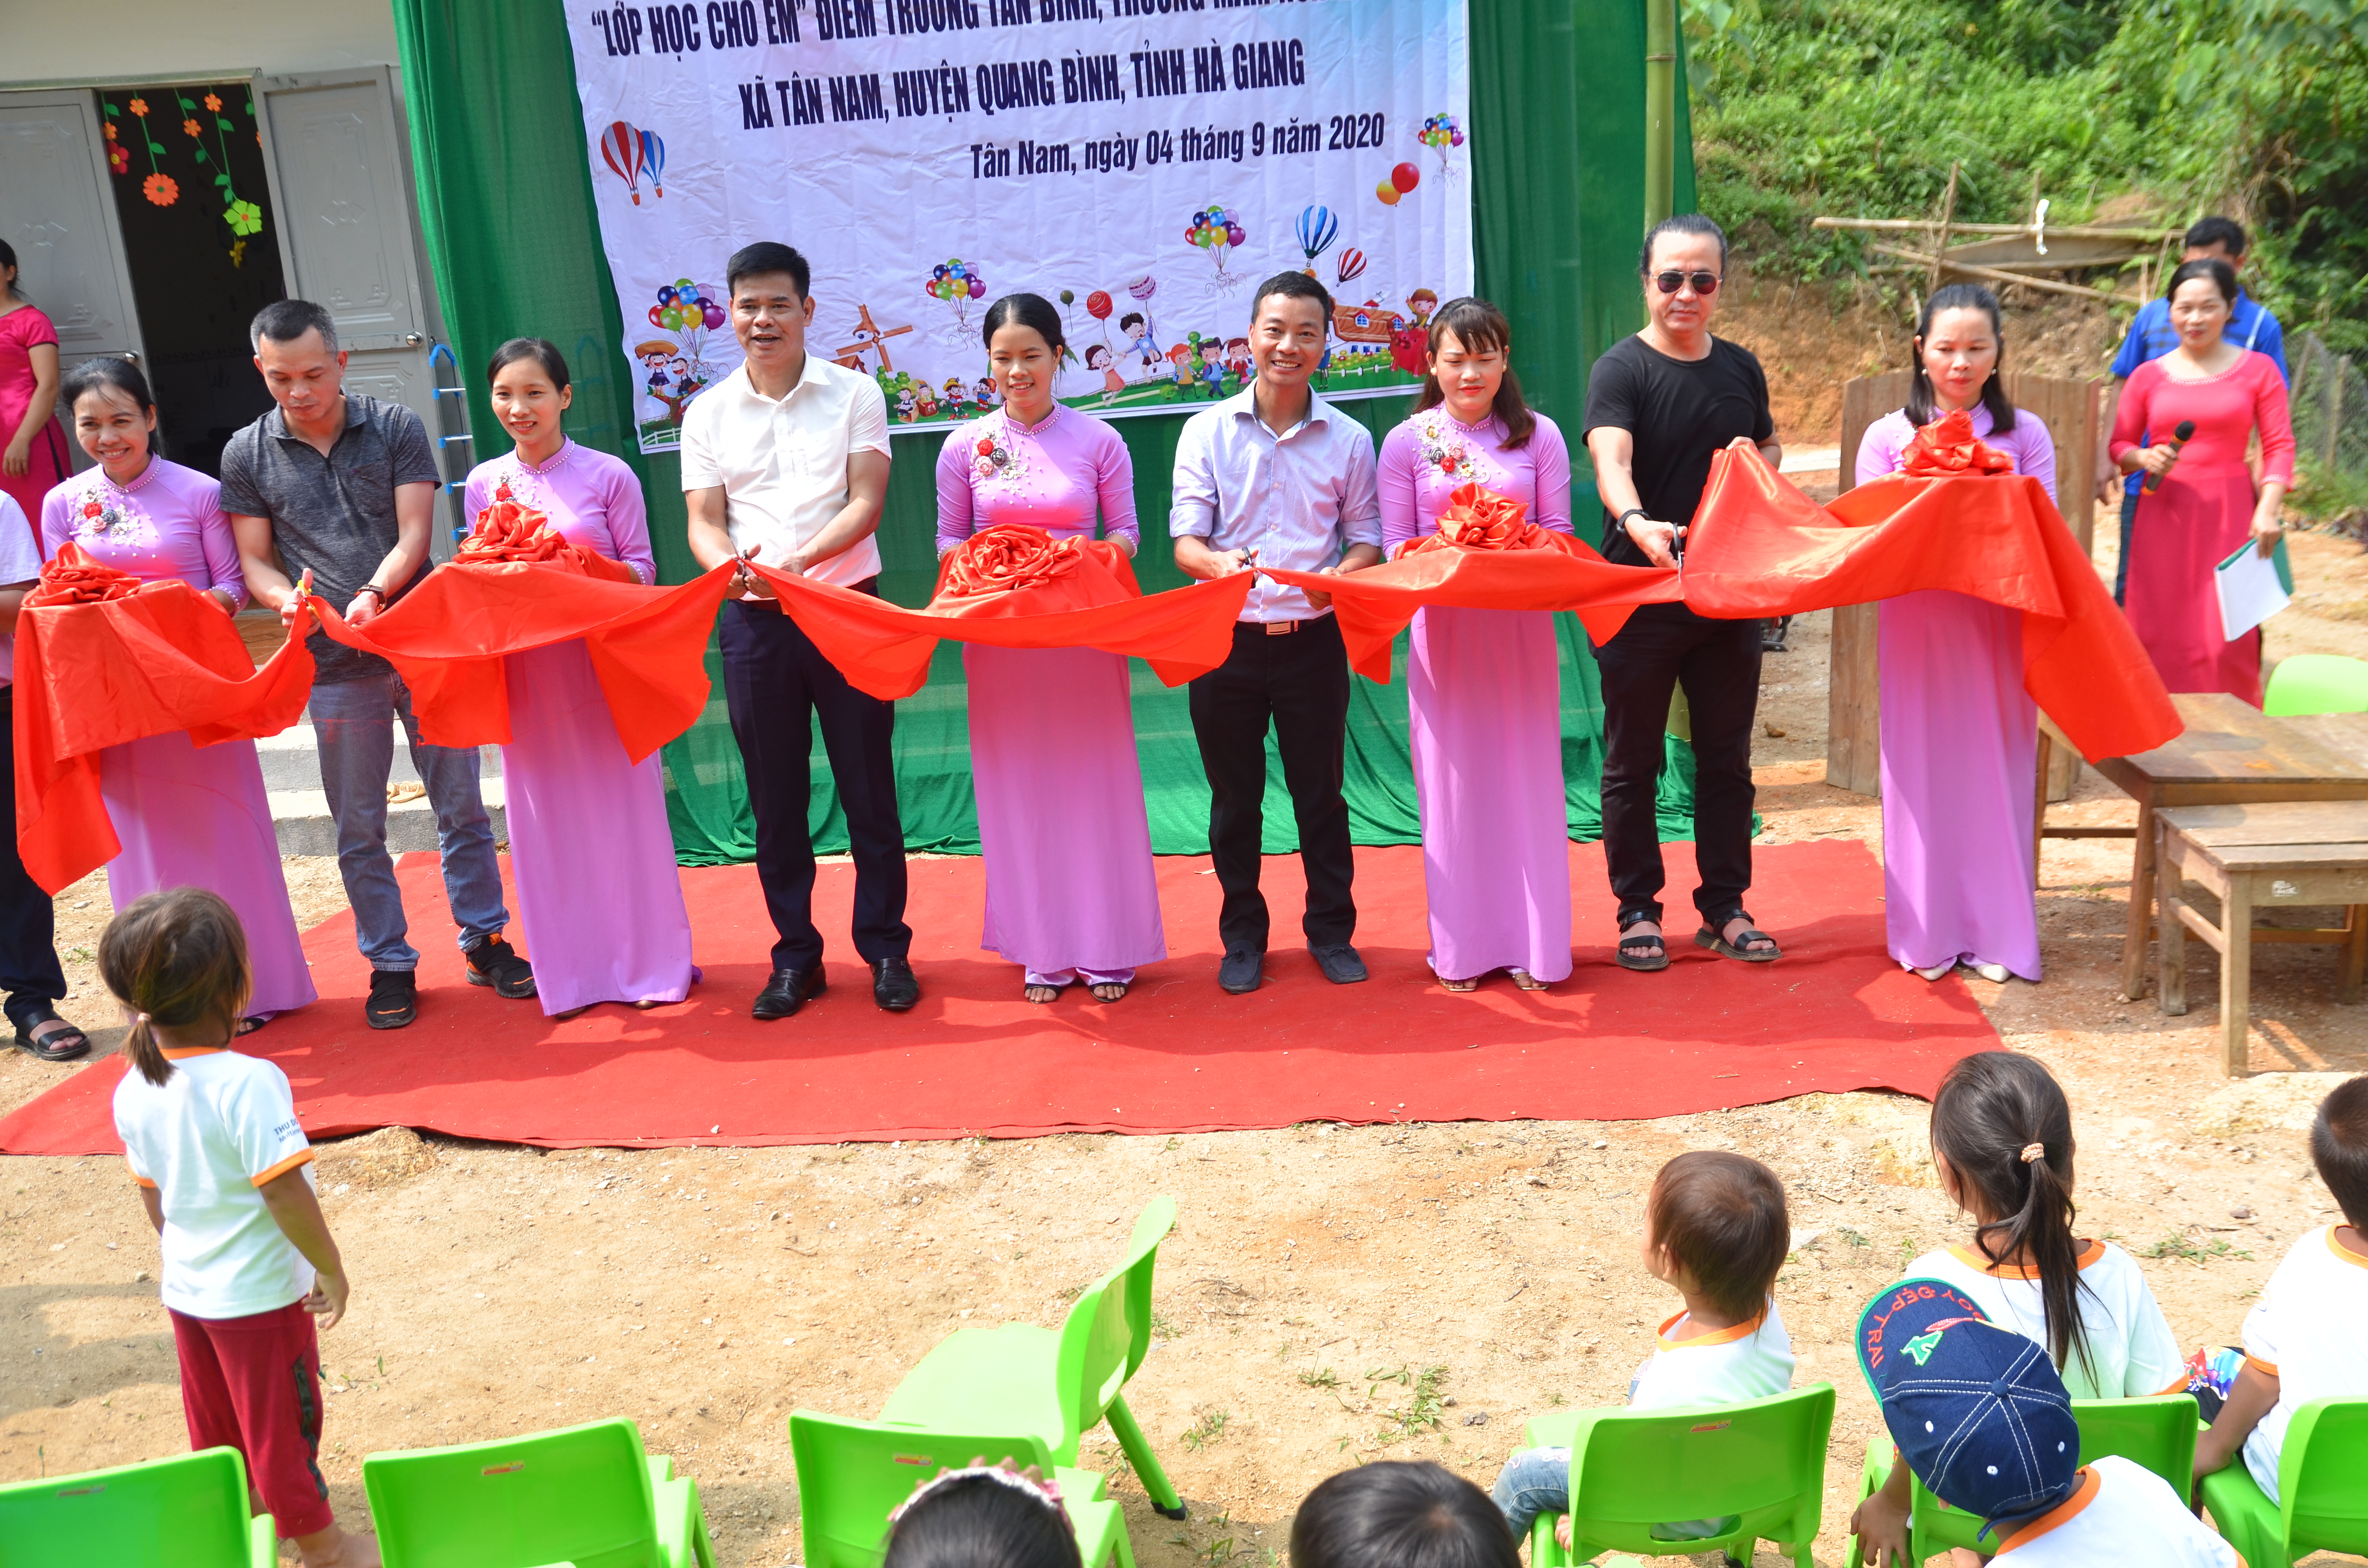 Thủ Đô Multimedia trao tặng lớp học mới tại thôn Tân Bình, xã Tân Nam, huyện Quang Bình